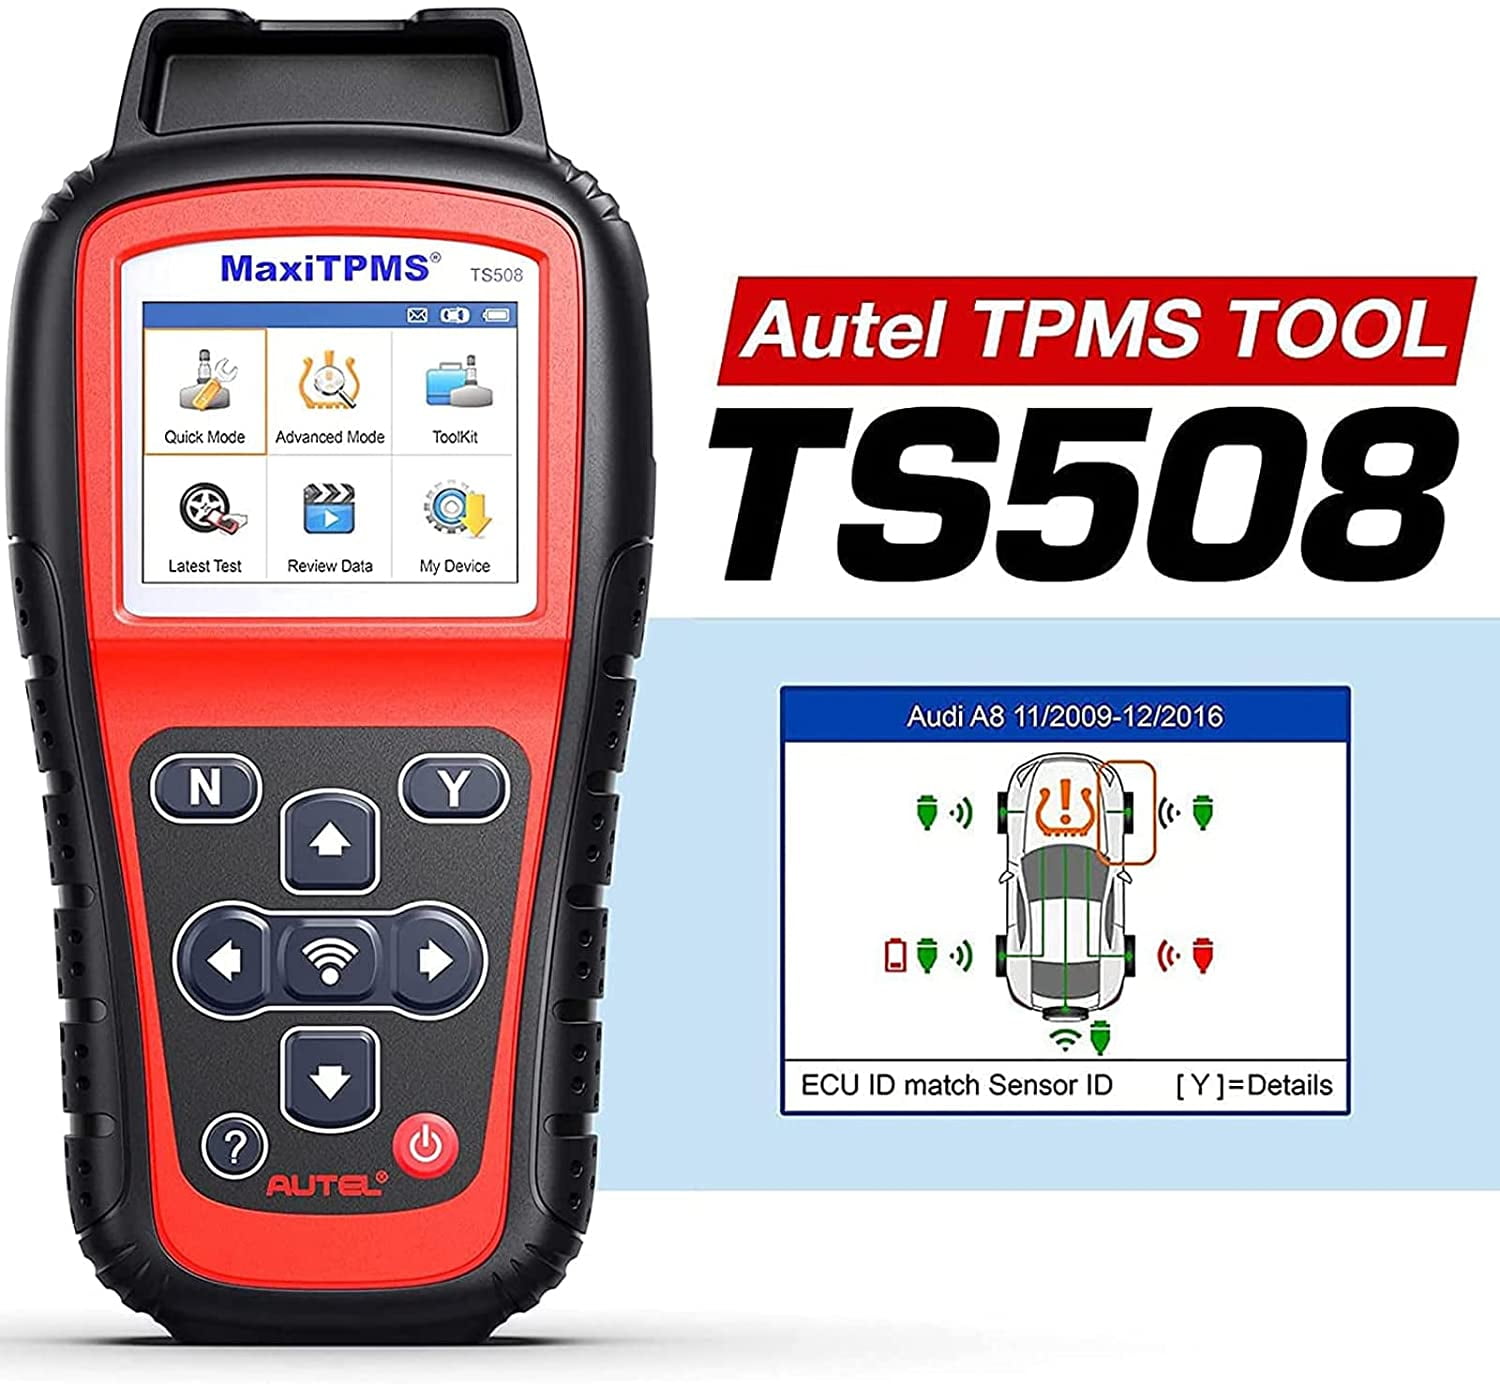 Autel TS501 Tire Pressure Monitoring System Diagnostic Tool Program TPMS Sensor 